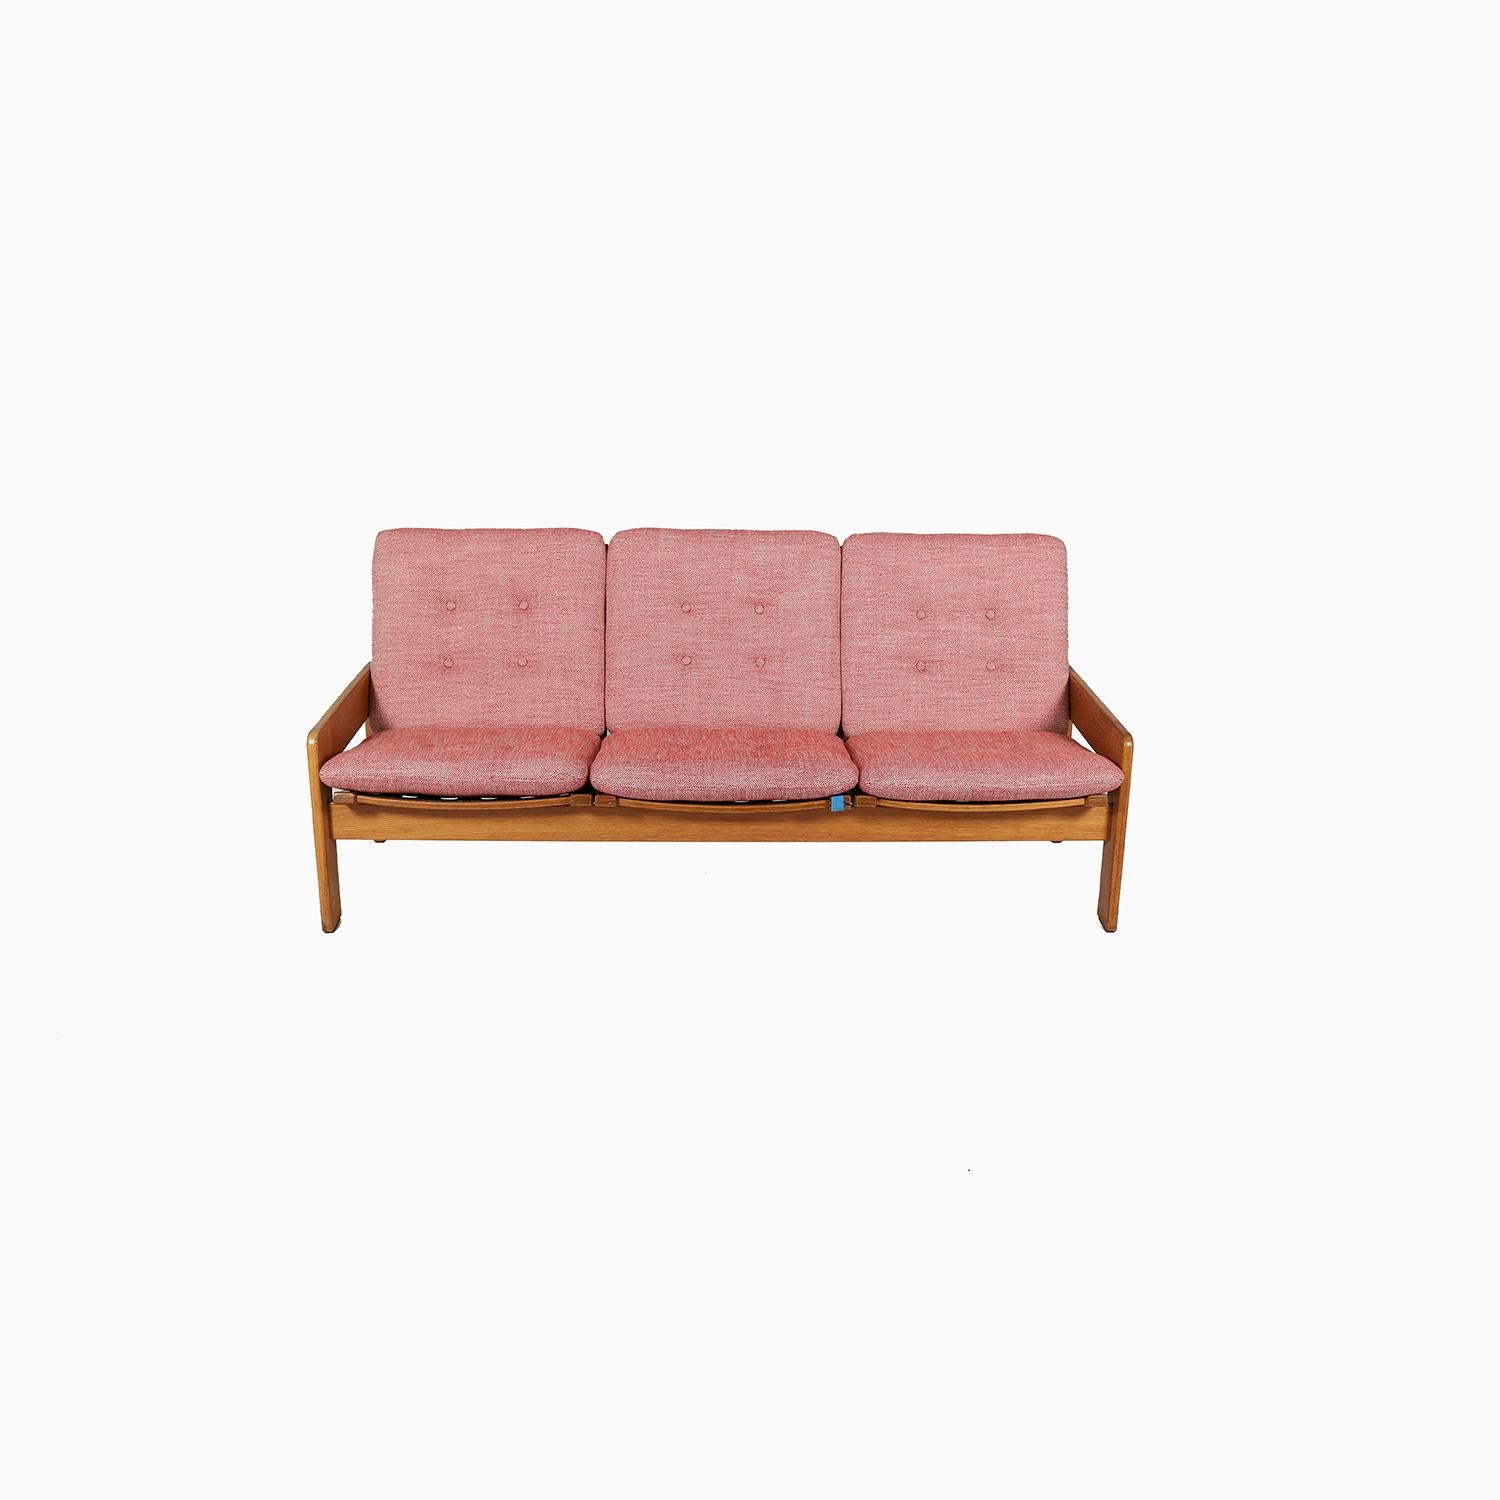 Un canapé trois places difficile à trouver, conçu par l'un des designers suédois les plus connus, Yngve Ekstrom. Cadre en chêne patiné et nouvellement tapissé en Trolley Car 